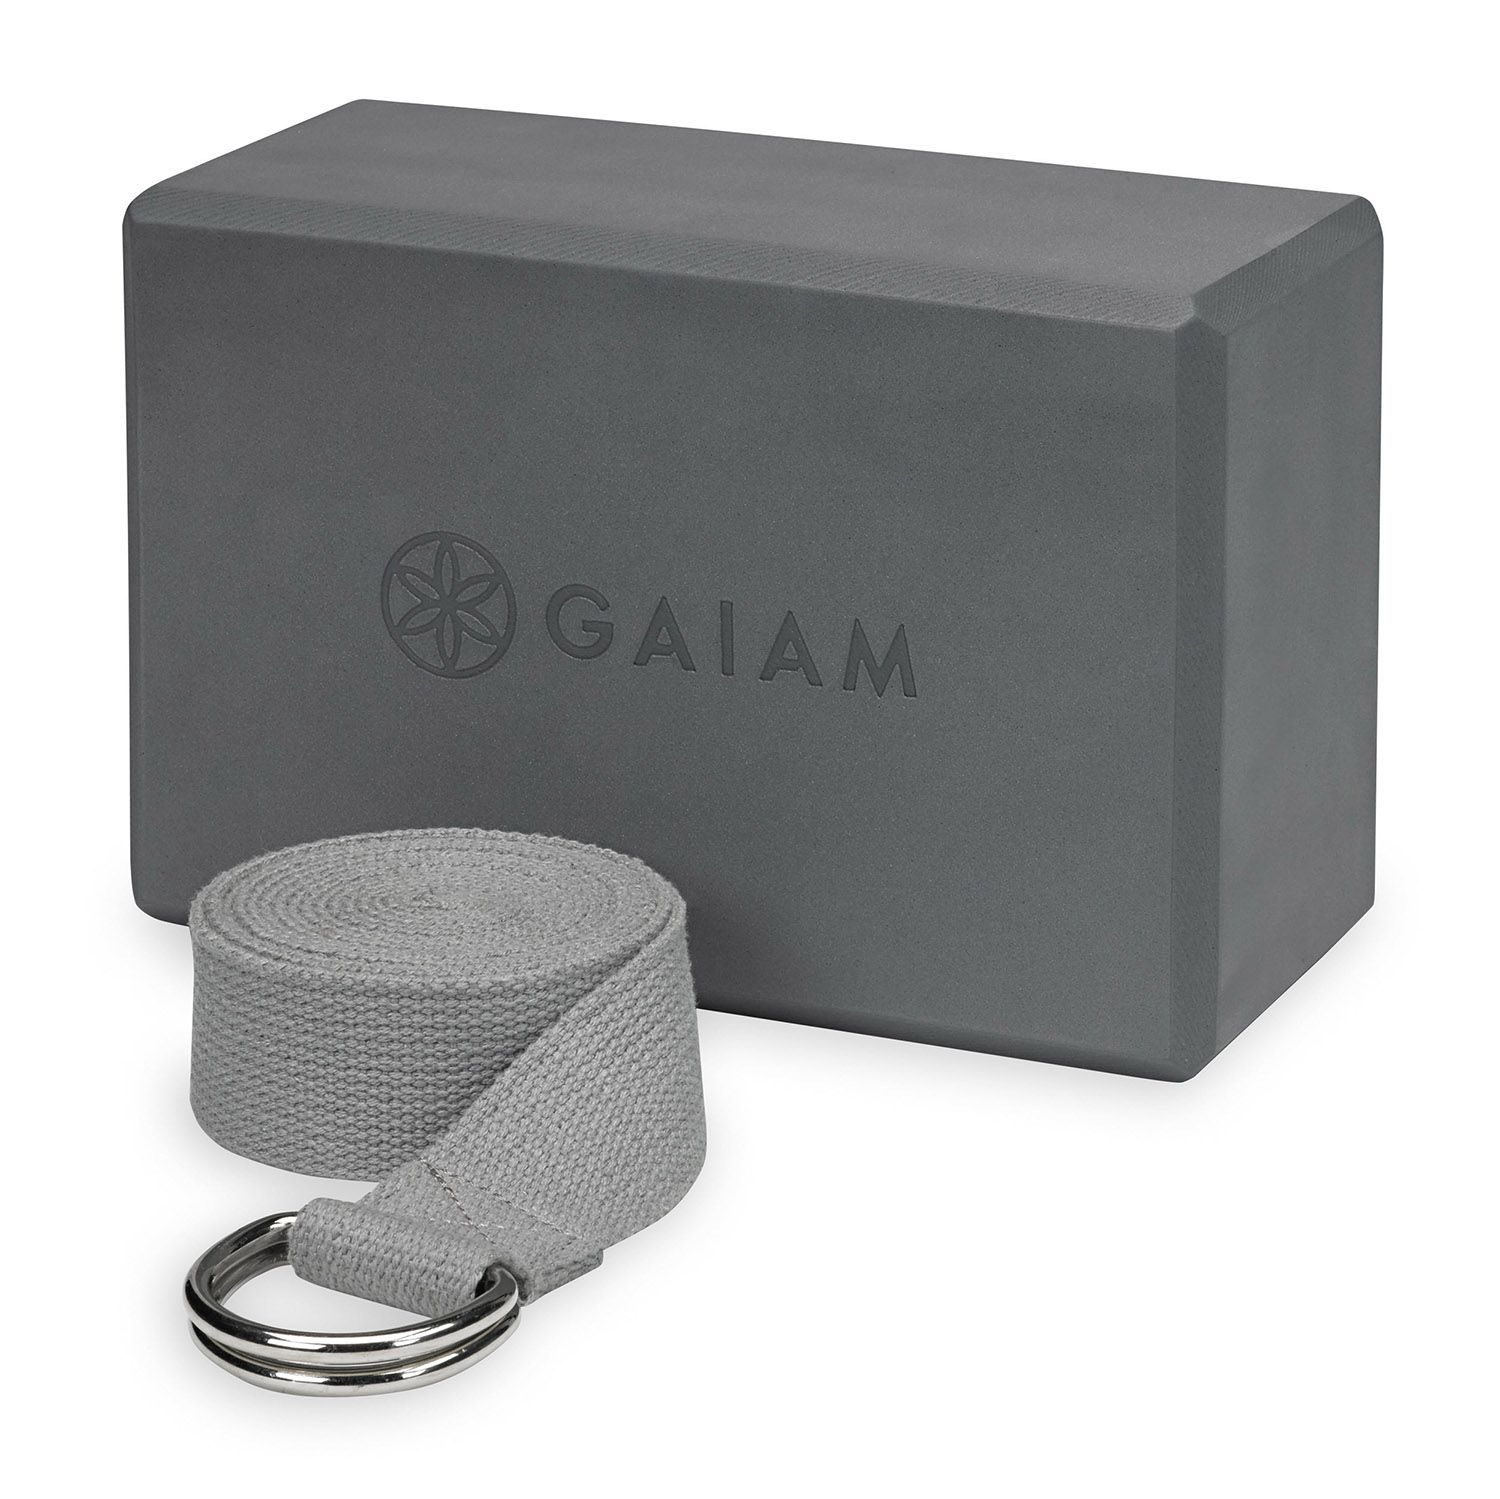  Gaiam: Yoga Accessories